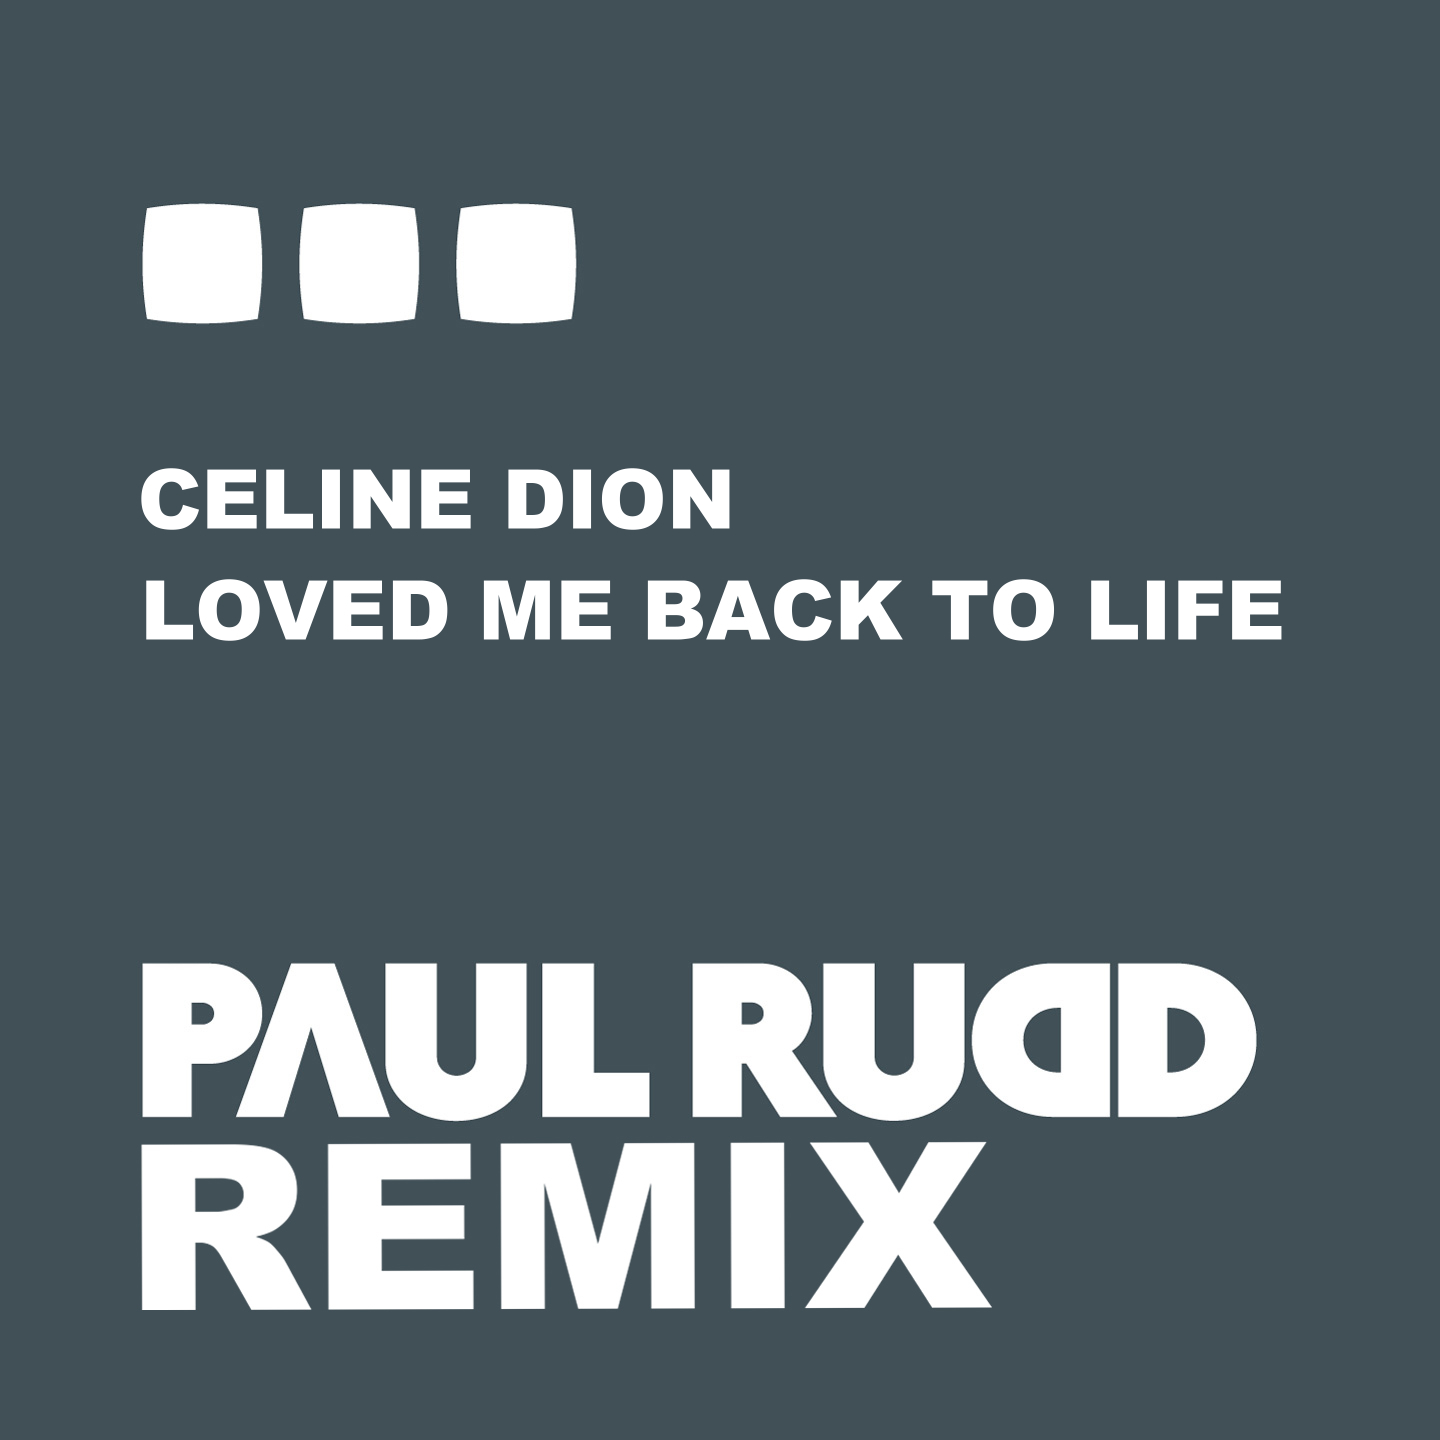 Coming back to life. Celine Dion Loved me back to Life. Paul is Life. Back to me. Love me back to Life Natalie перевод.